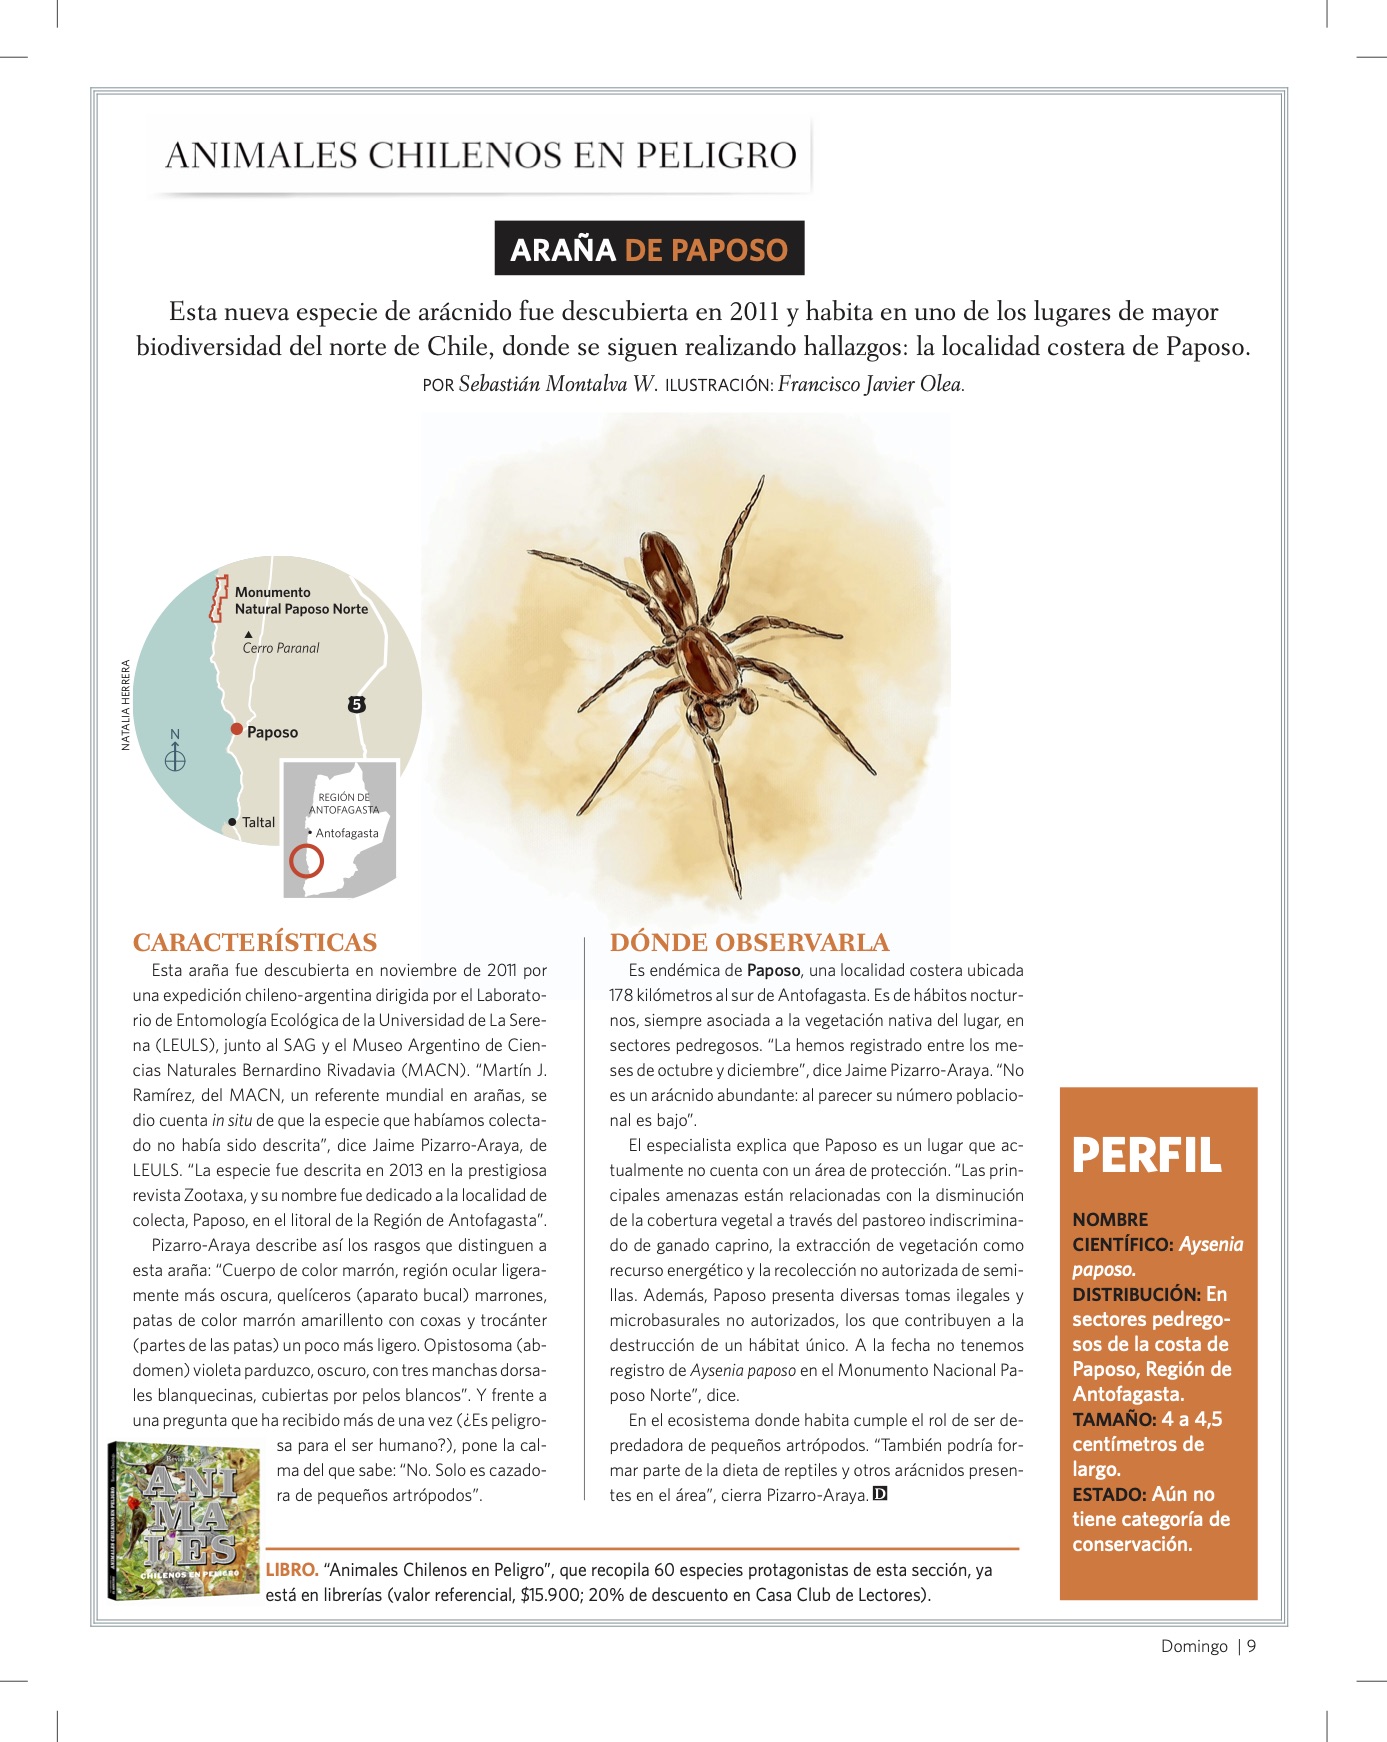 [Animales chilenos en peligro] Investigación ULS es publicada en Revista Del Domingo de El Mercurio